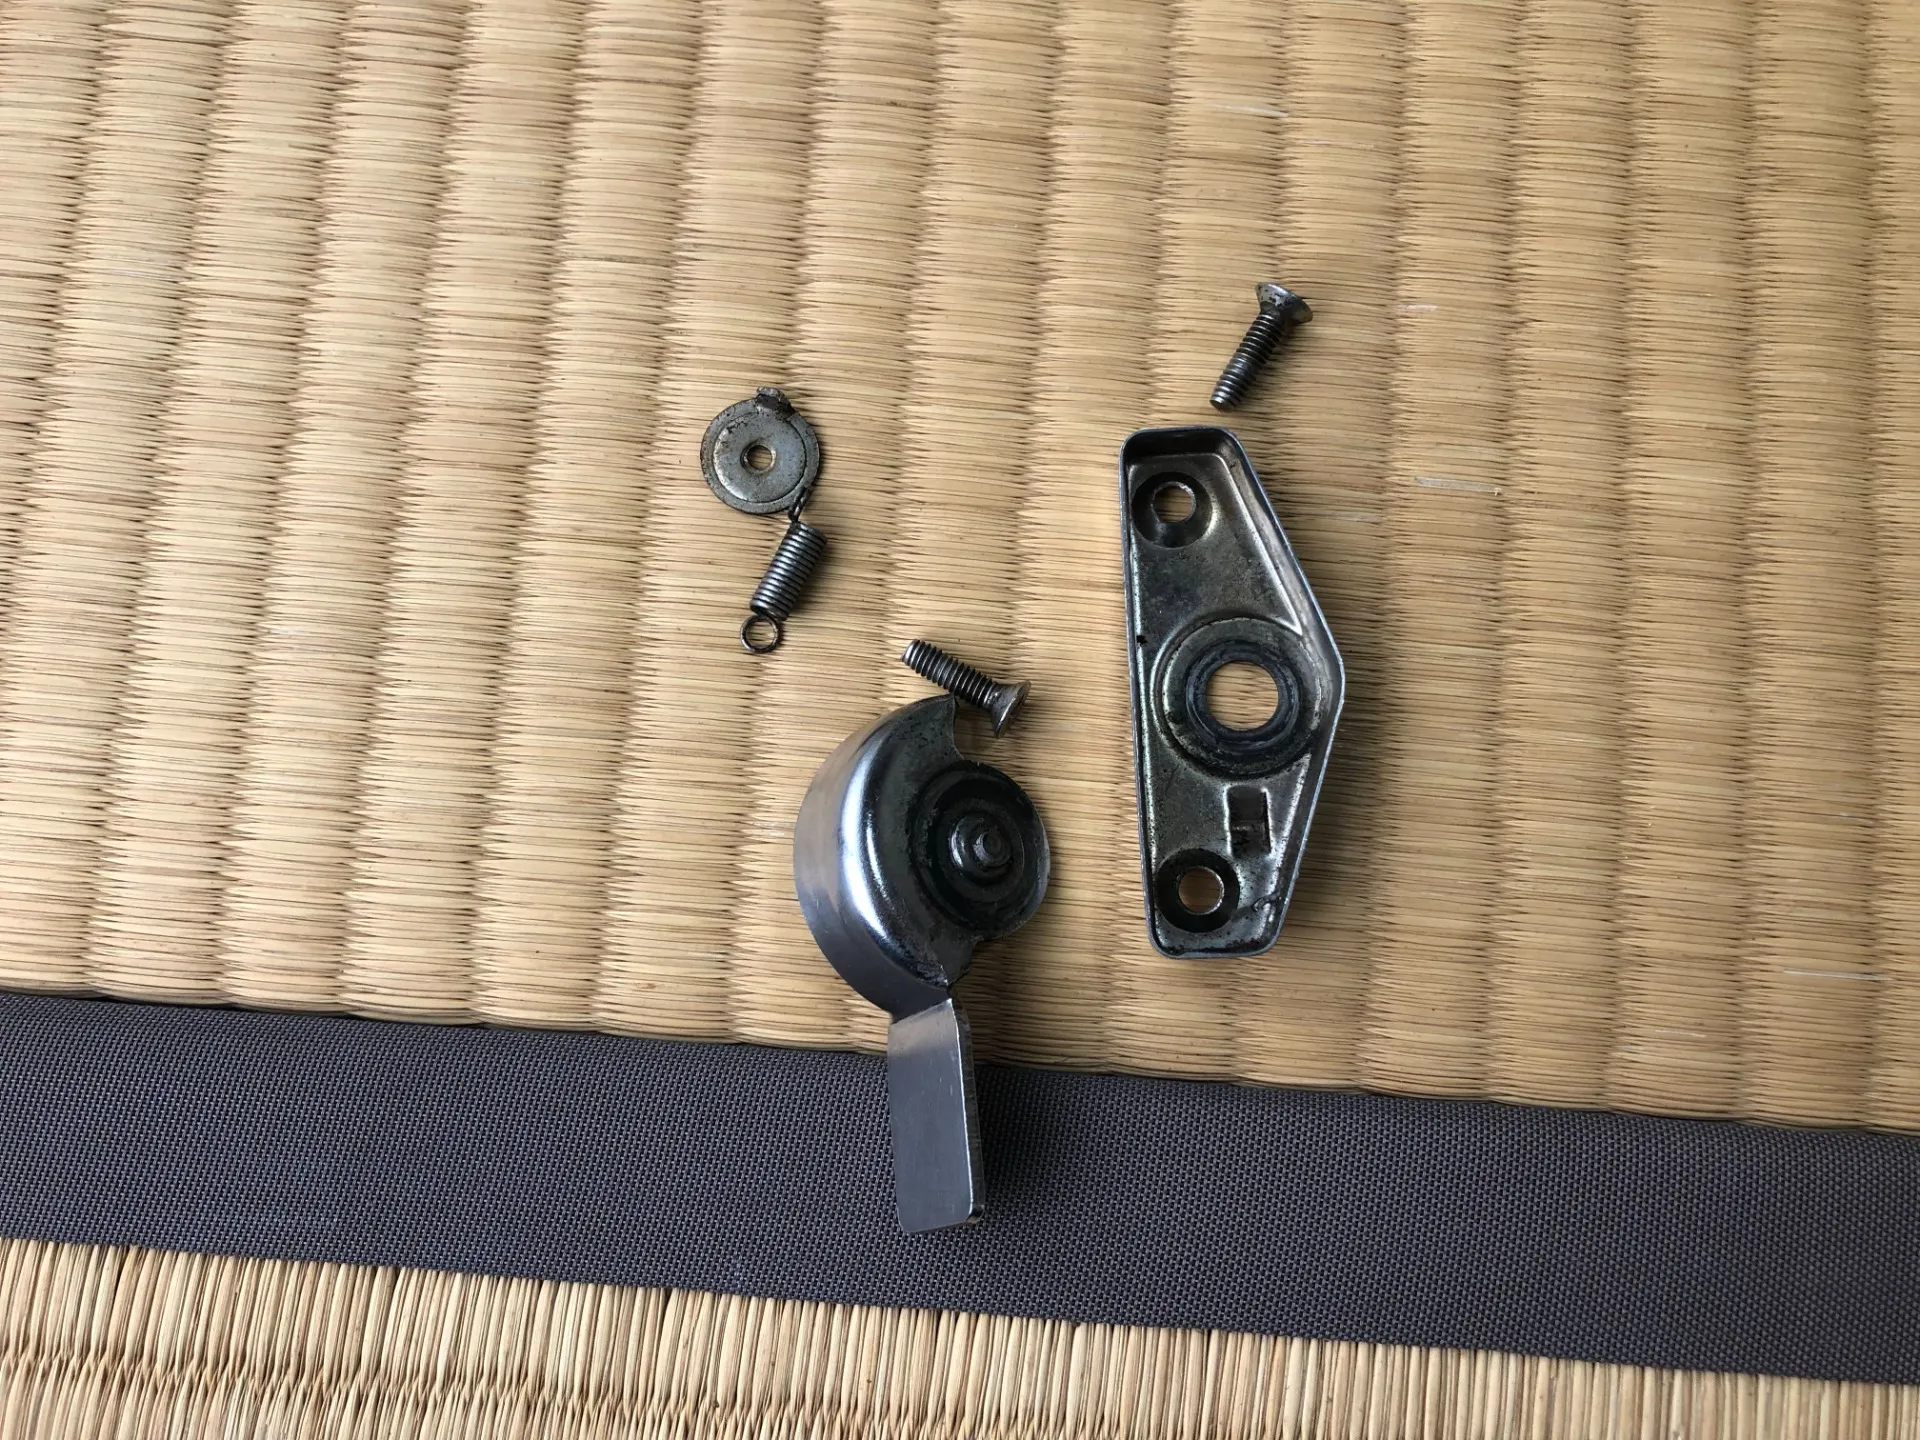 福岡市で窓の鍵クレセント錠の修理・交換を頼むなら「鍵当番さん」へ！